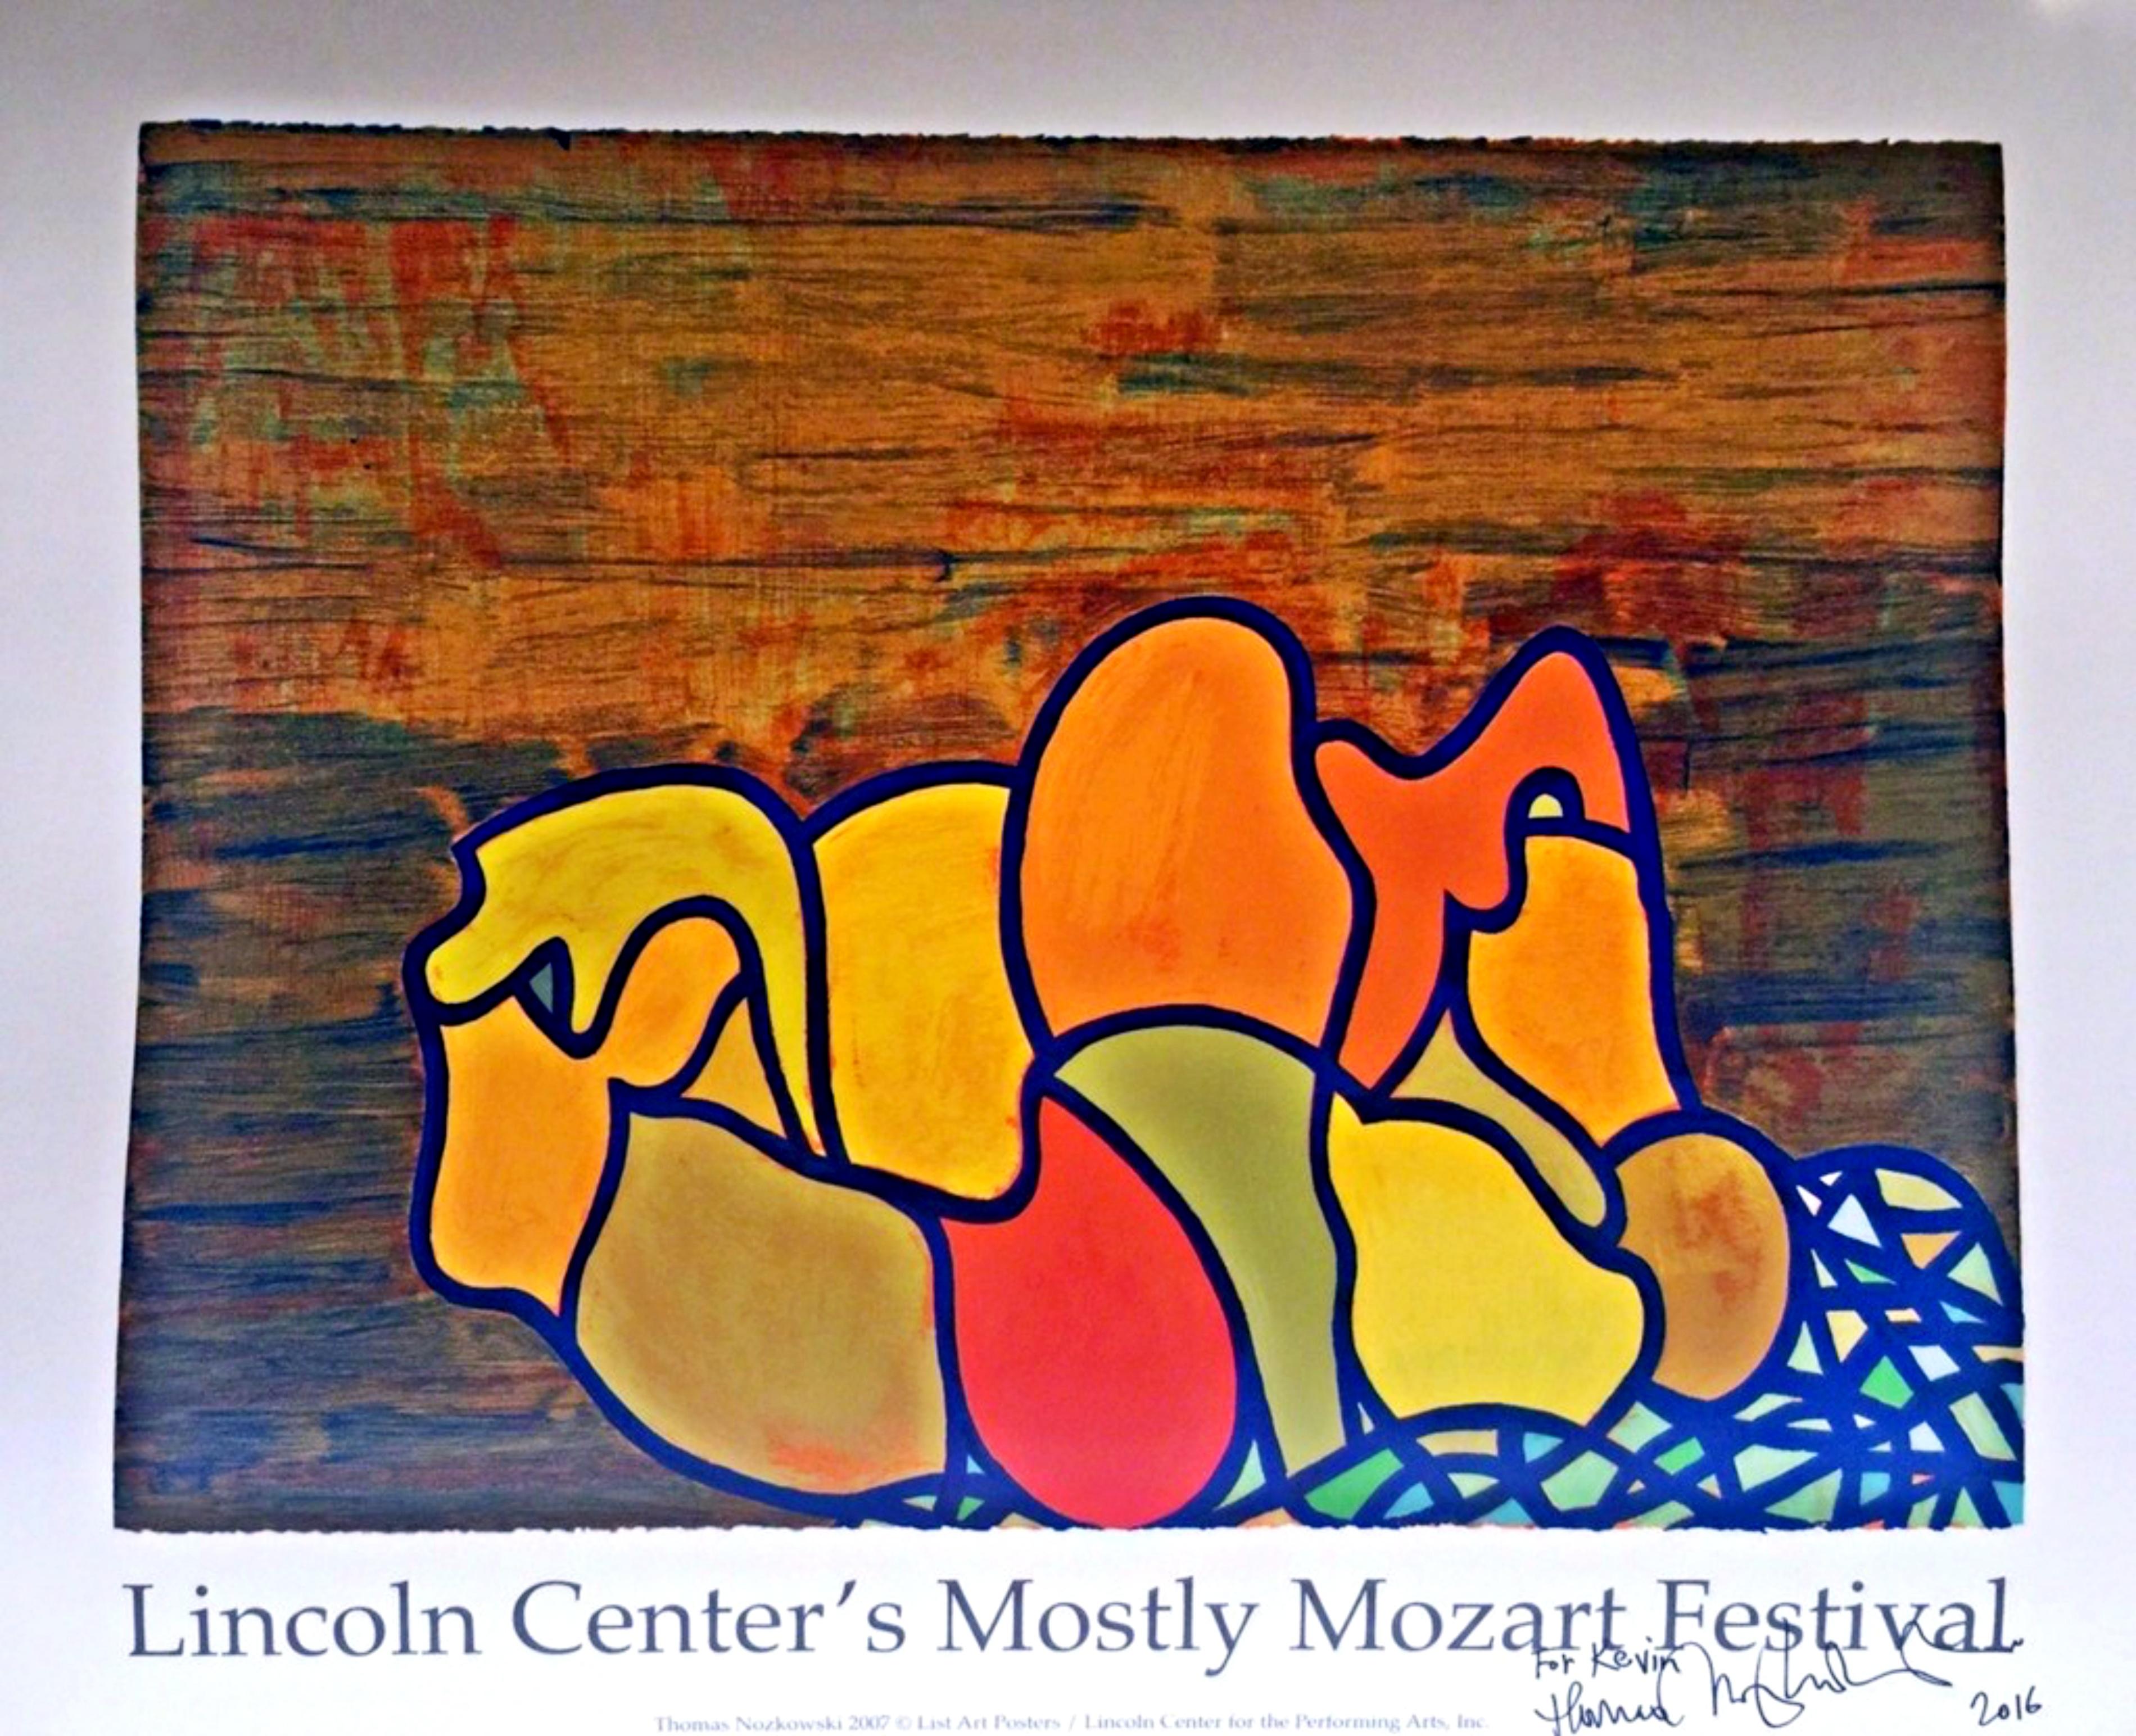 Abstrakte Abstraktion für Lincoln Center, handsigniert, datiert, beschriftet von Thomas Nozkowski